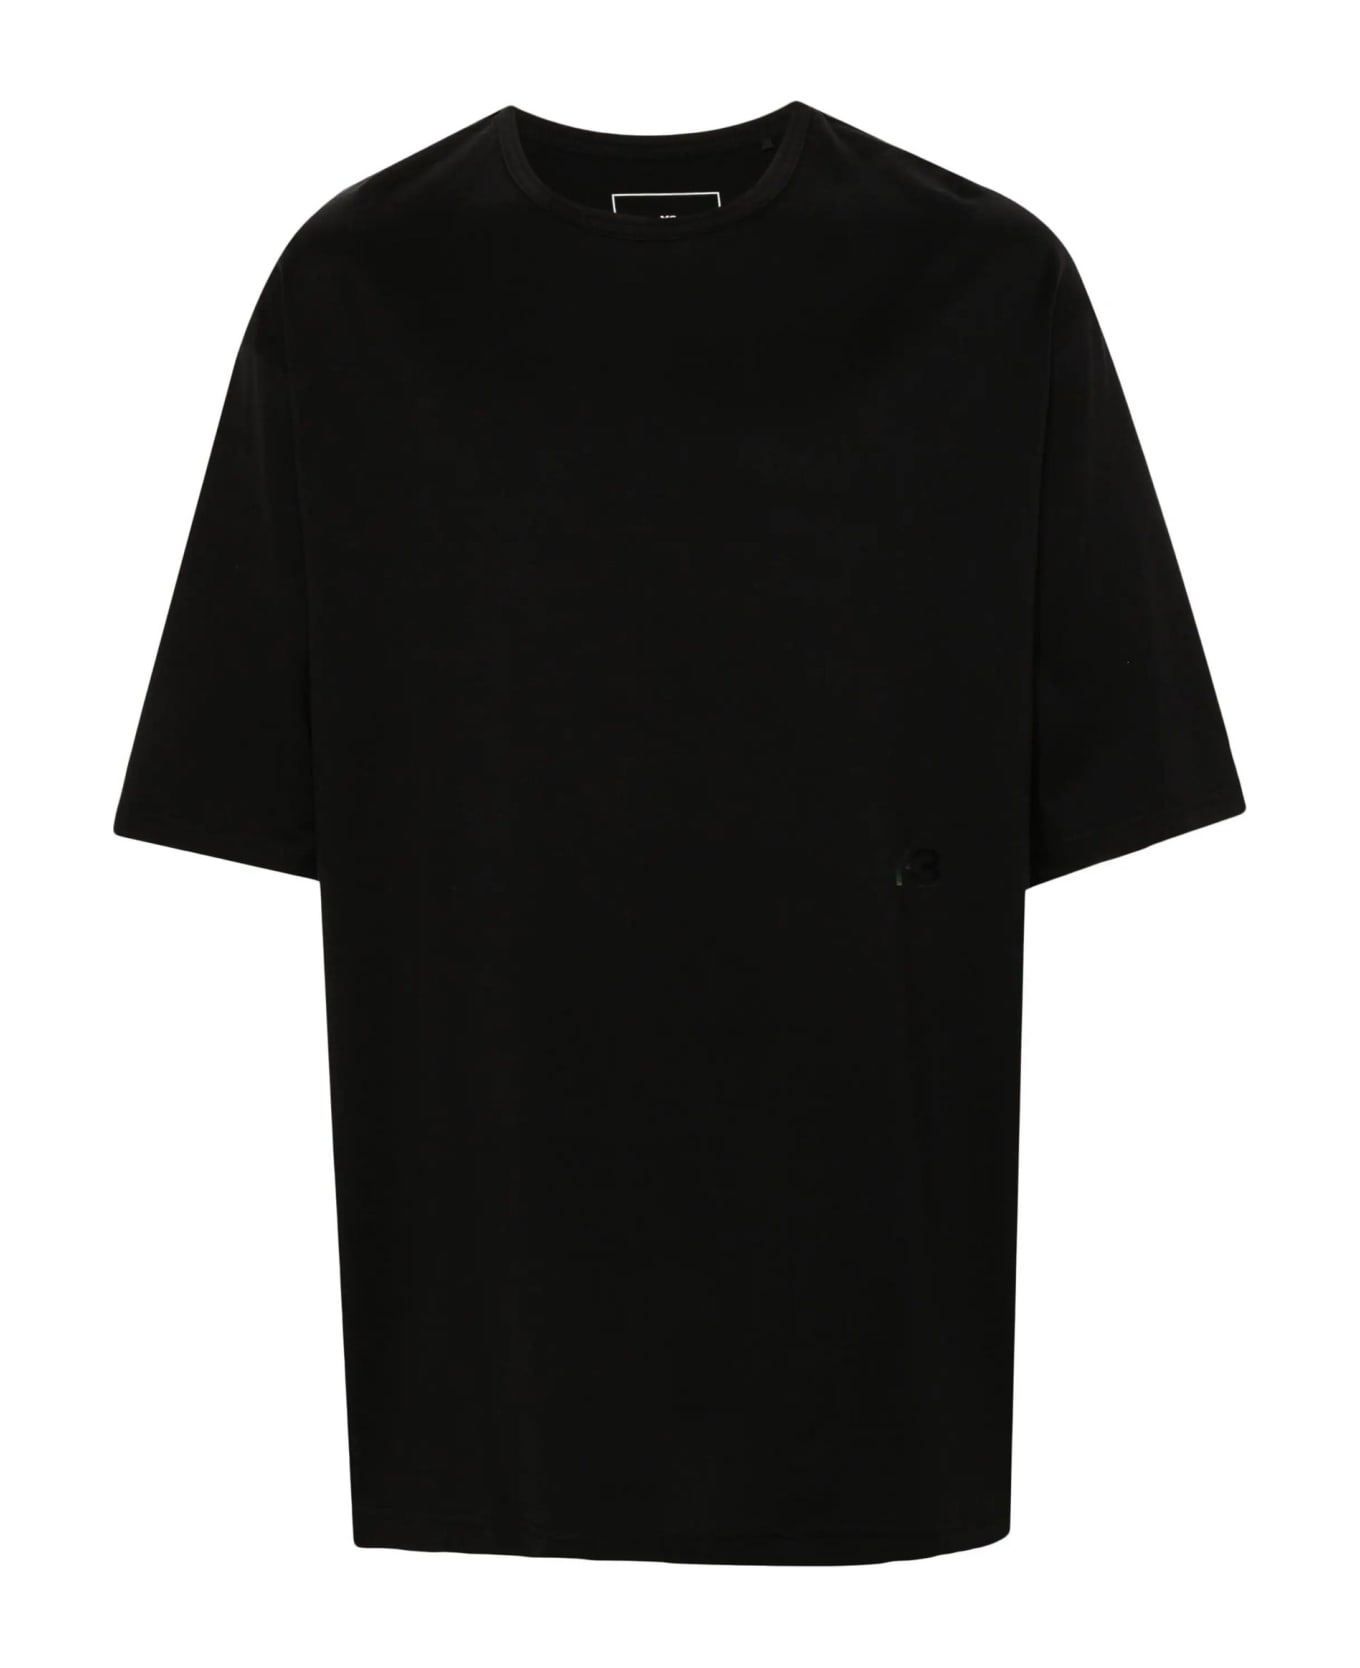 Y-3 T-shirts And Polos Black - Black シャツ